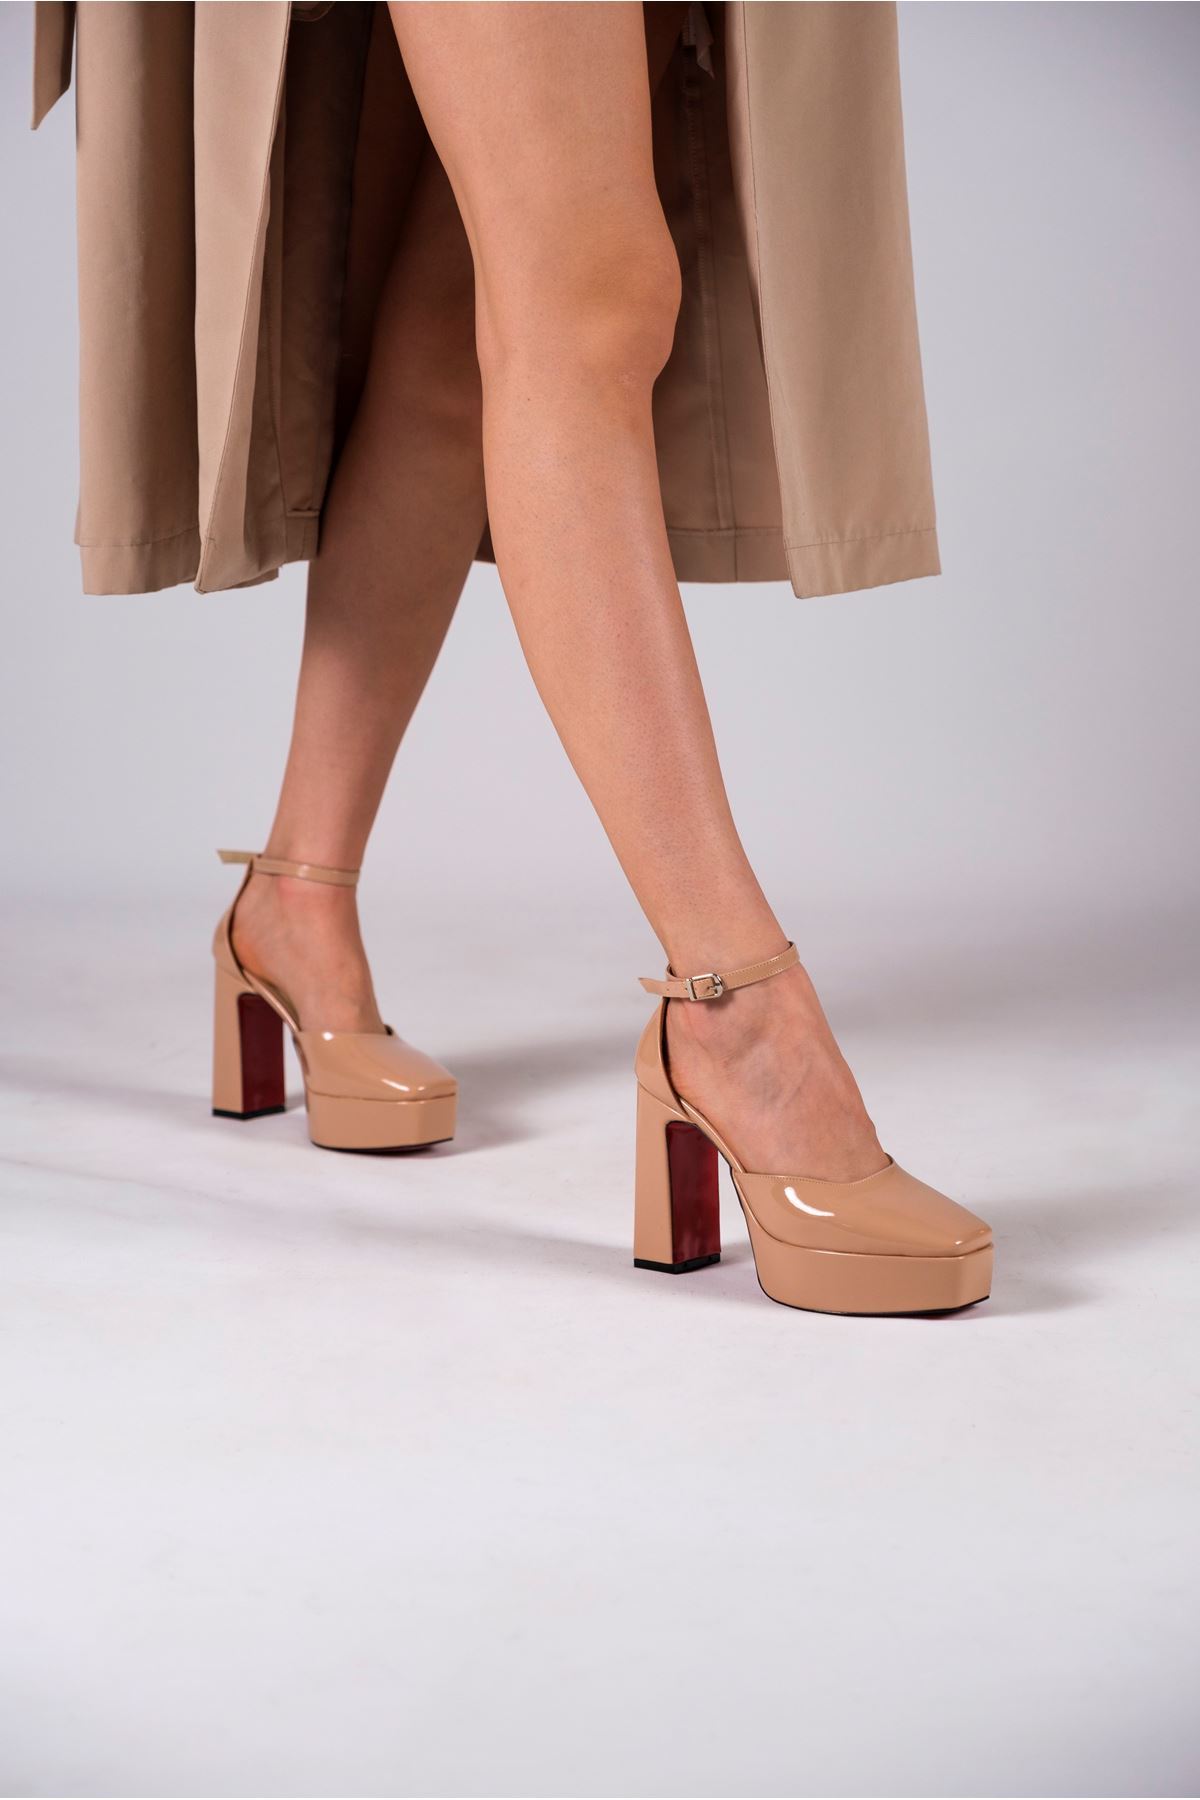 Nude Rugan Özel Tasarım Orta Topuklu Kadın Topuklu Ayakkabı Albina